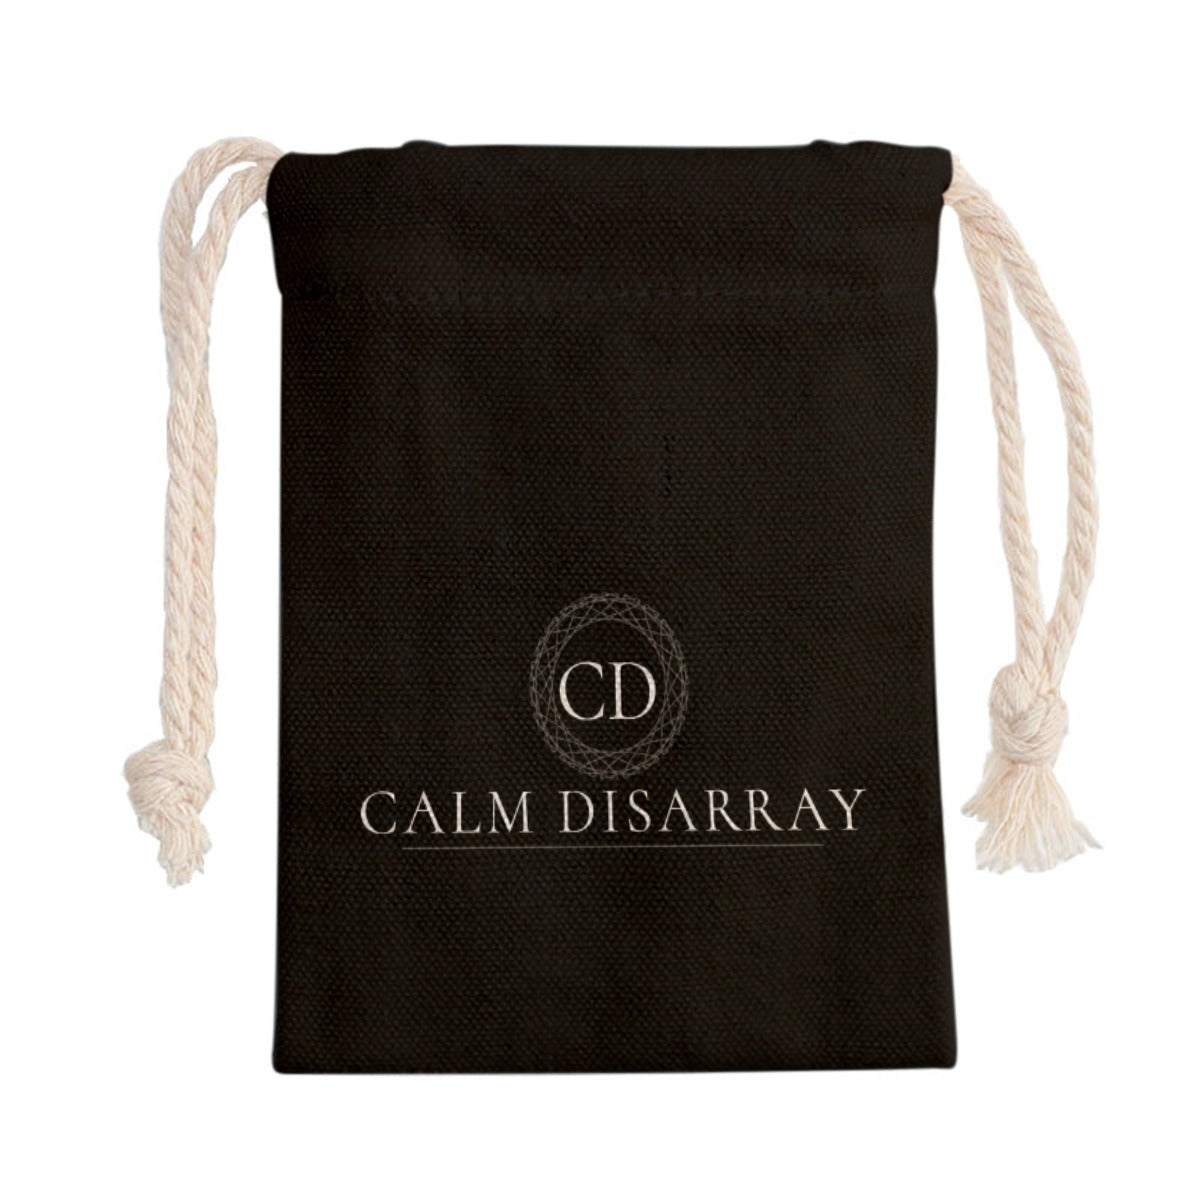 CALM DISARRAY Sack Bag